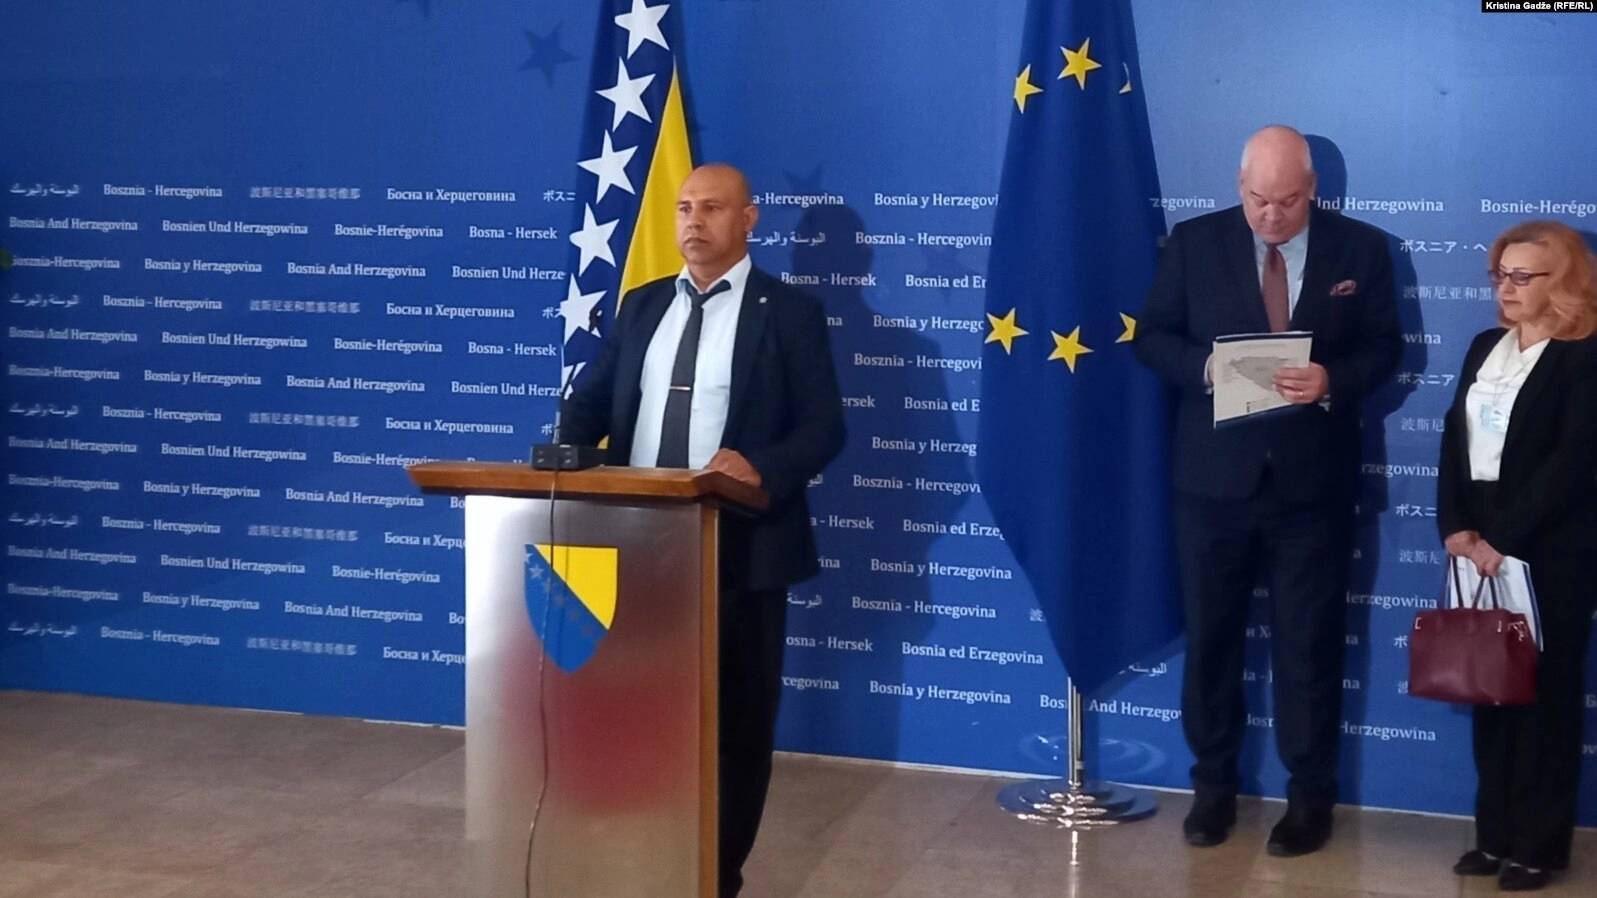 Nacionalne manjine traže svog predstavnika u Predsjedništvu BiH